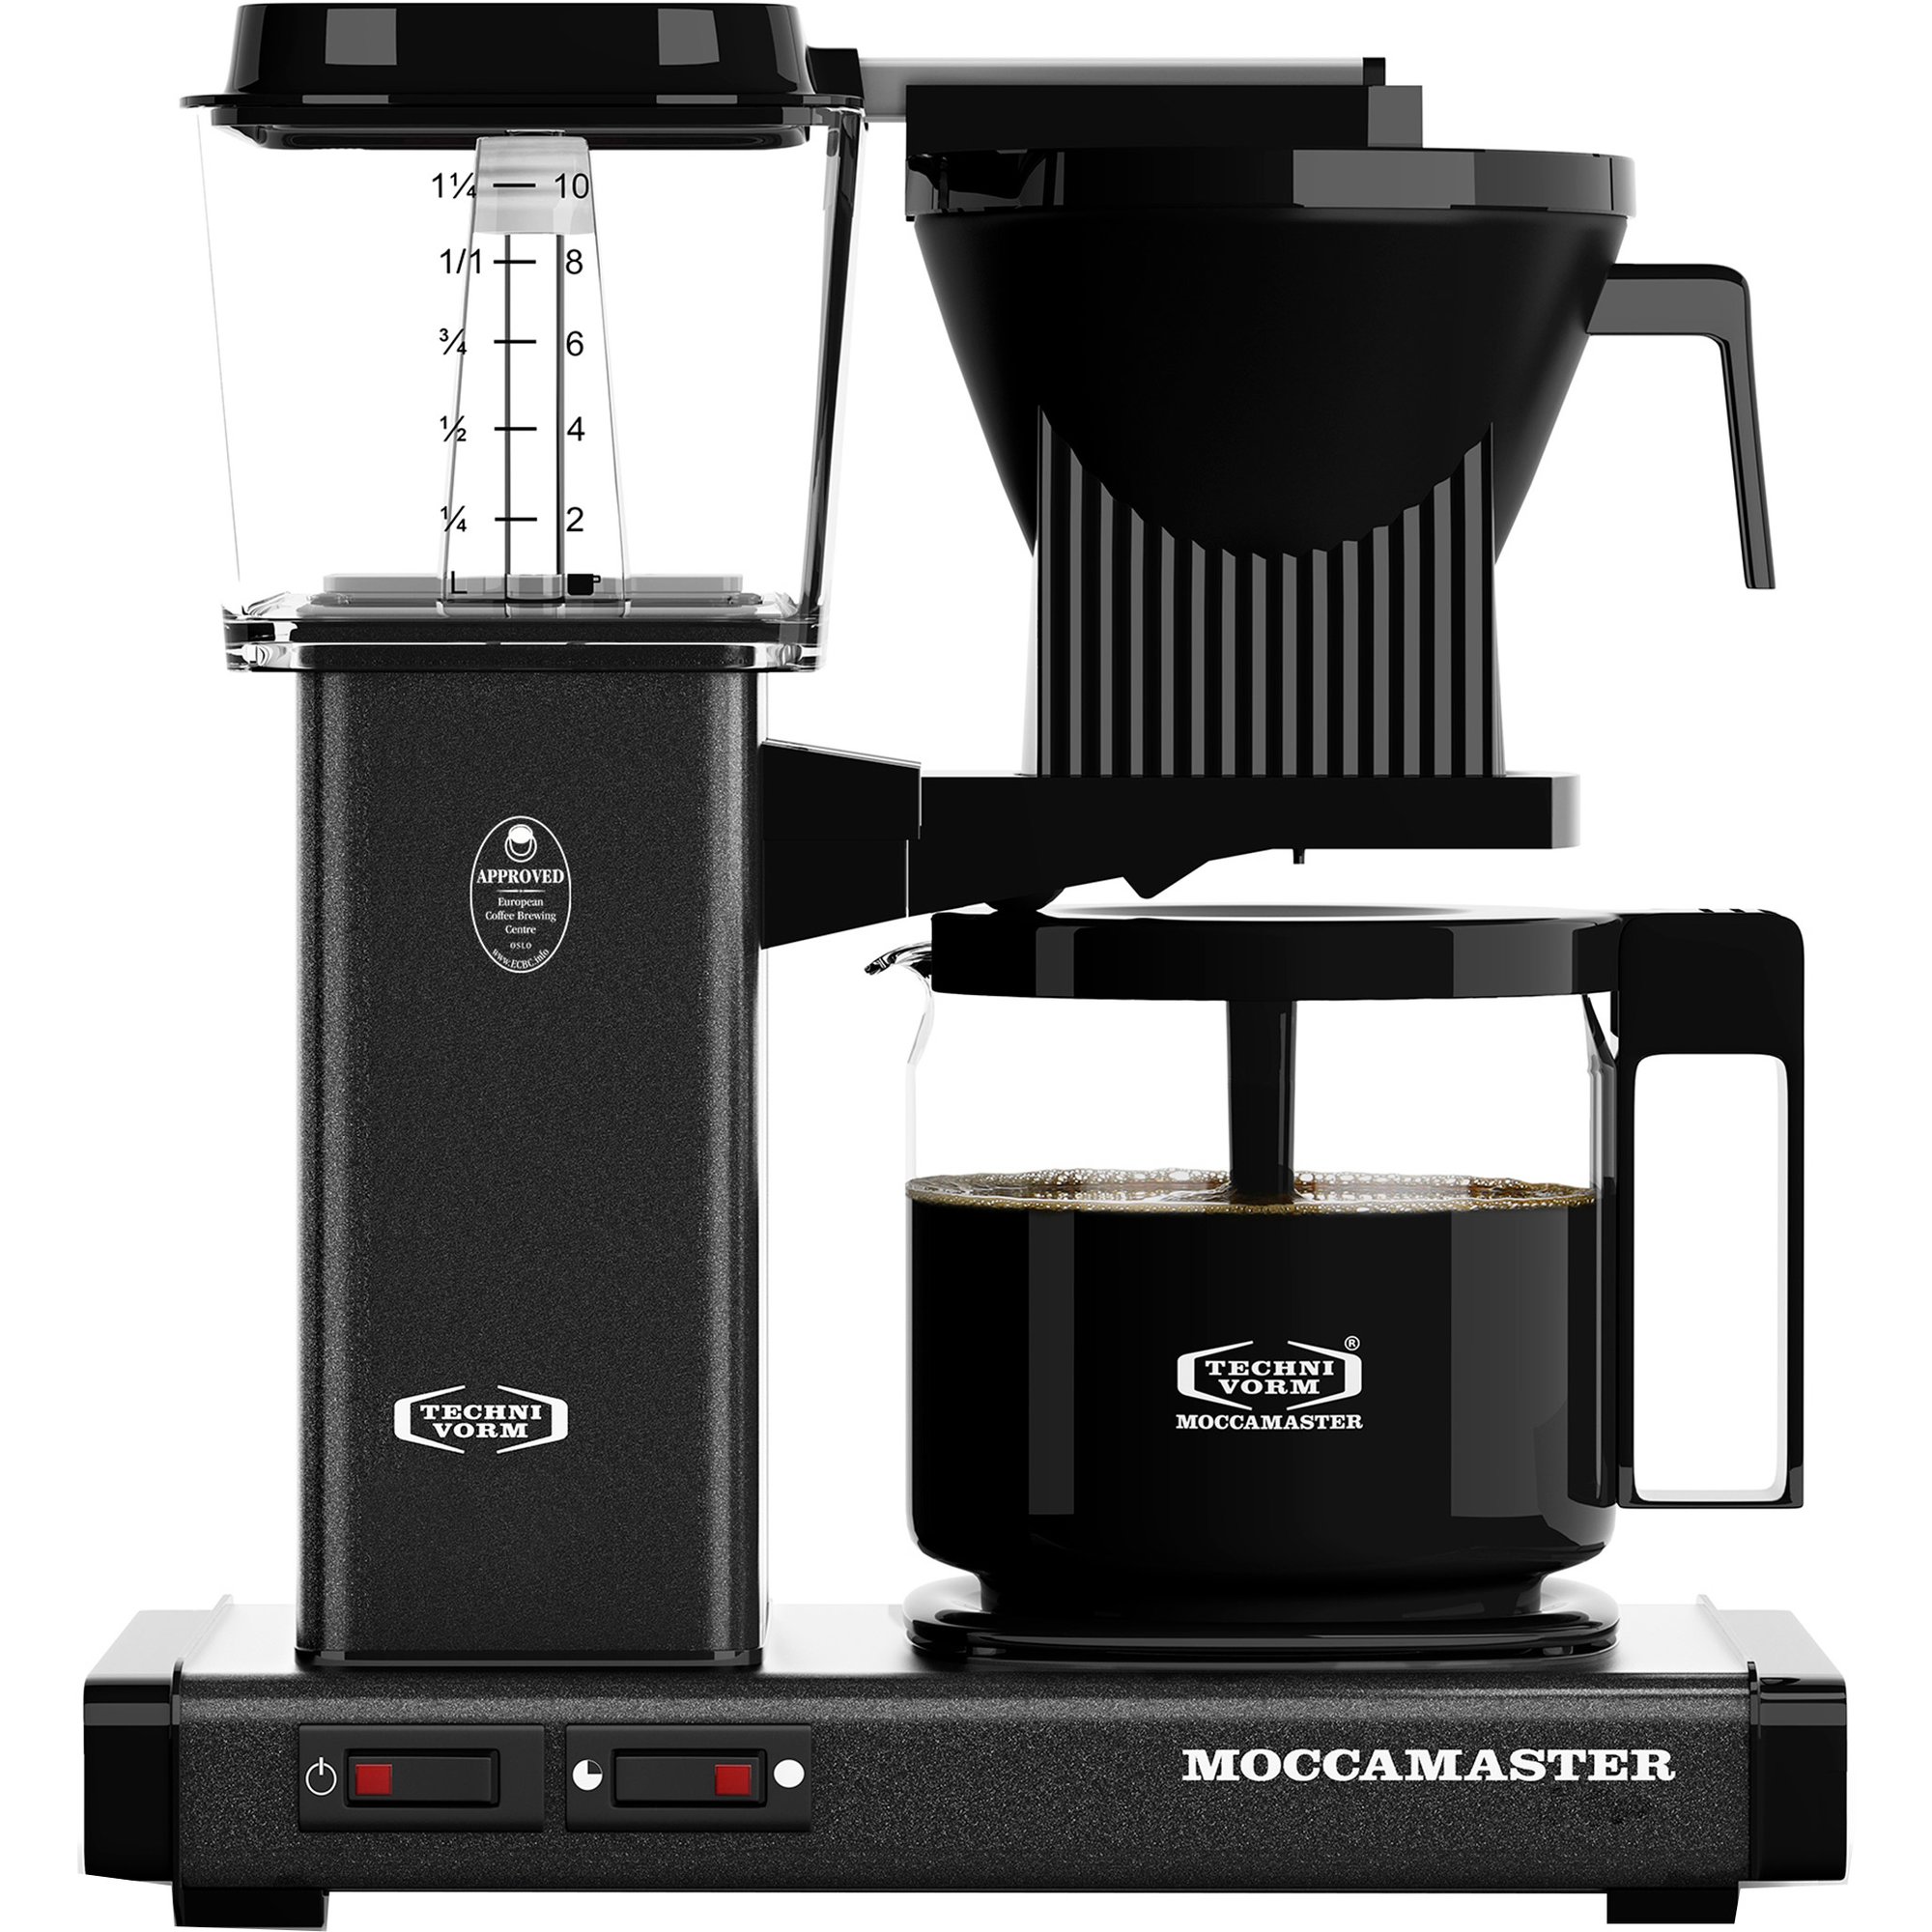 Bedste Kaffemaskine - Kaffemaskiner Til Kaffe